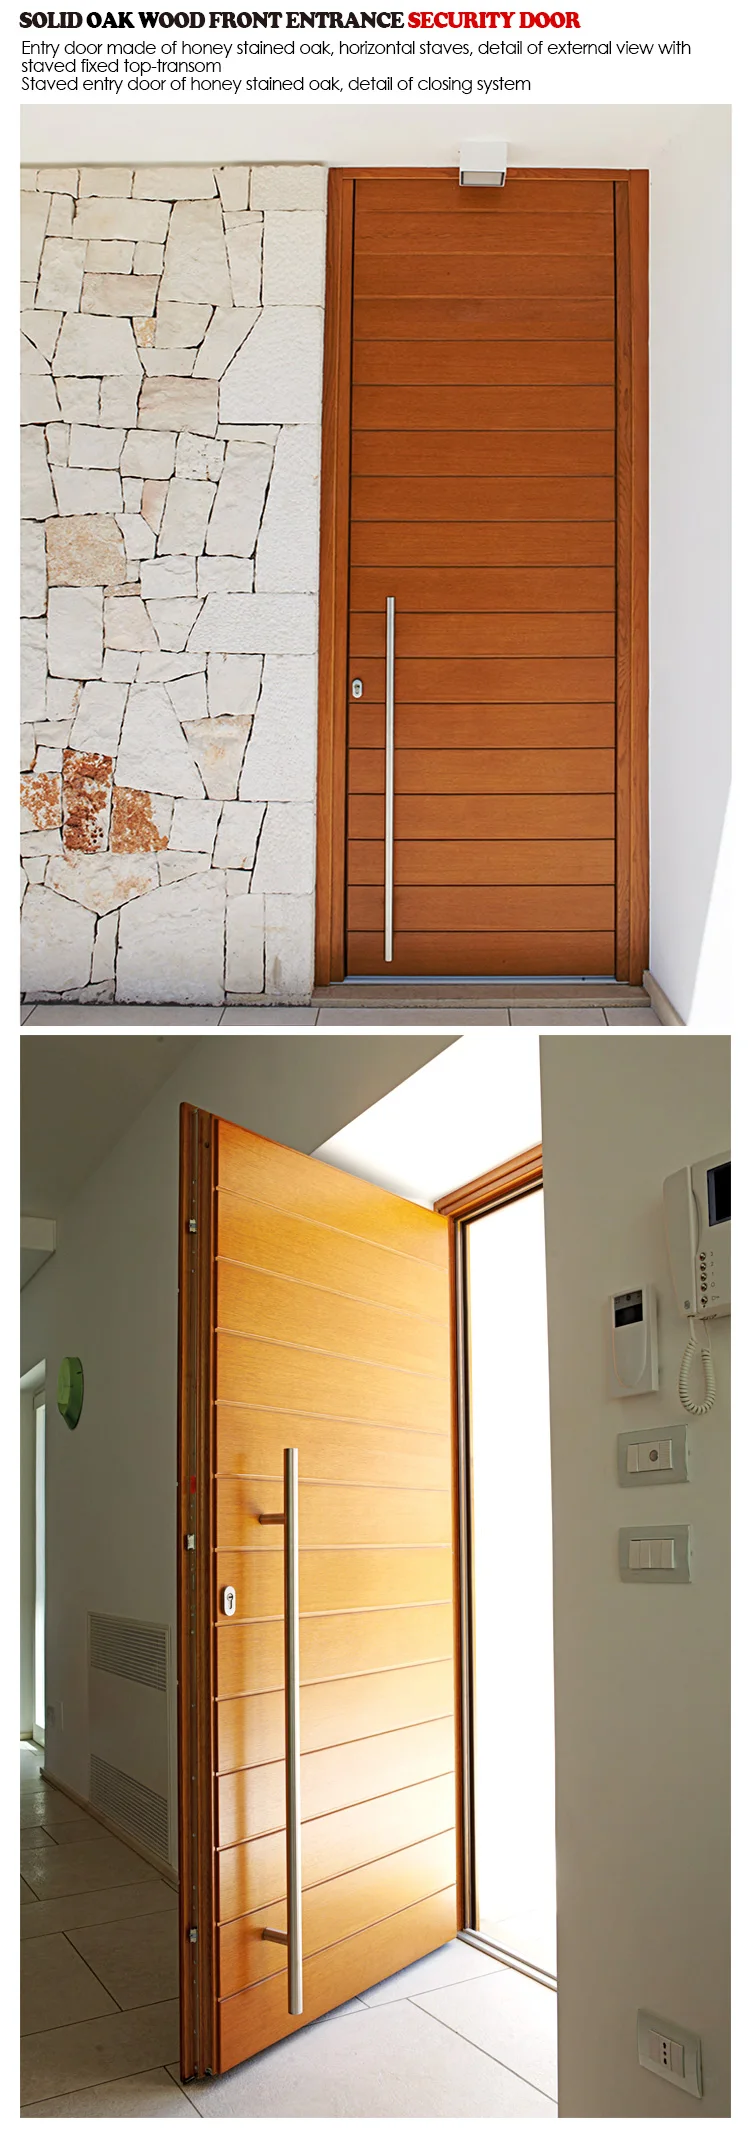 New design front entry door styles external timber doors exterior wood